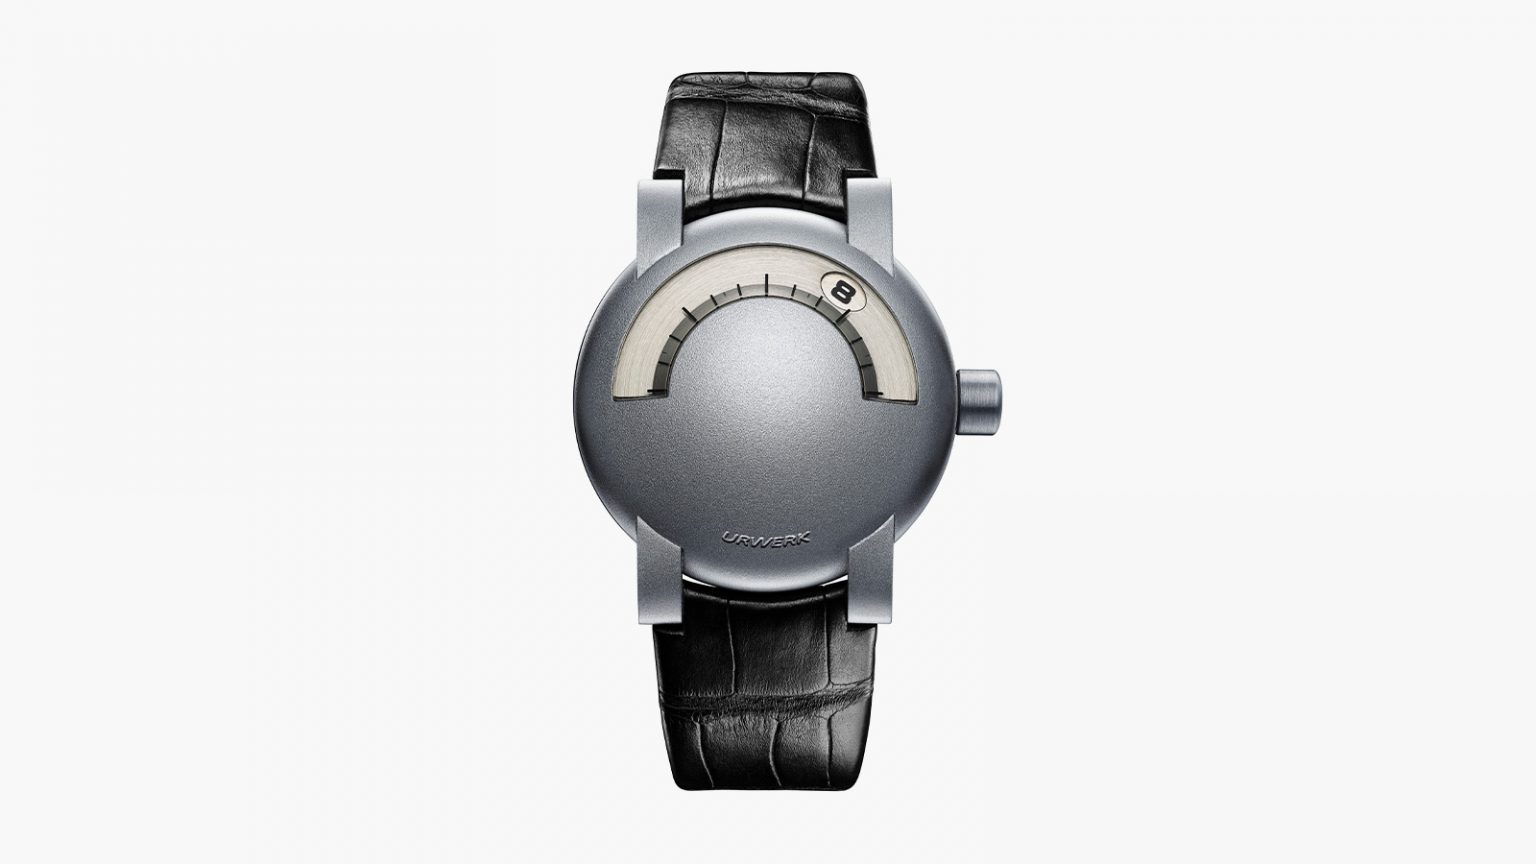 독립 시계 브랜드의 독보적인 타임피스, 위르베르크 UR-102 가이아